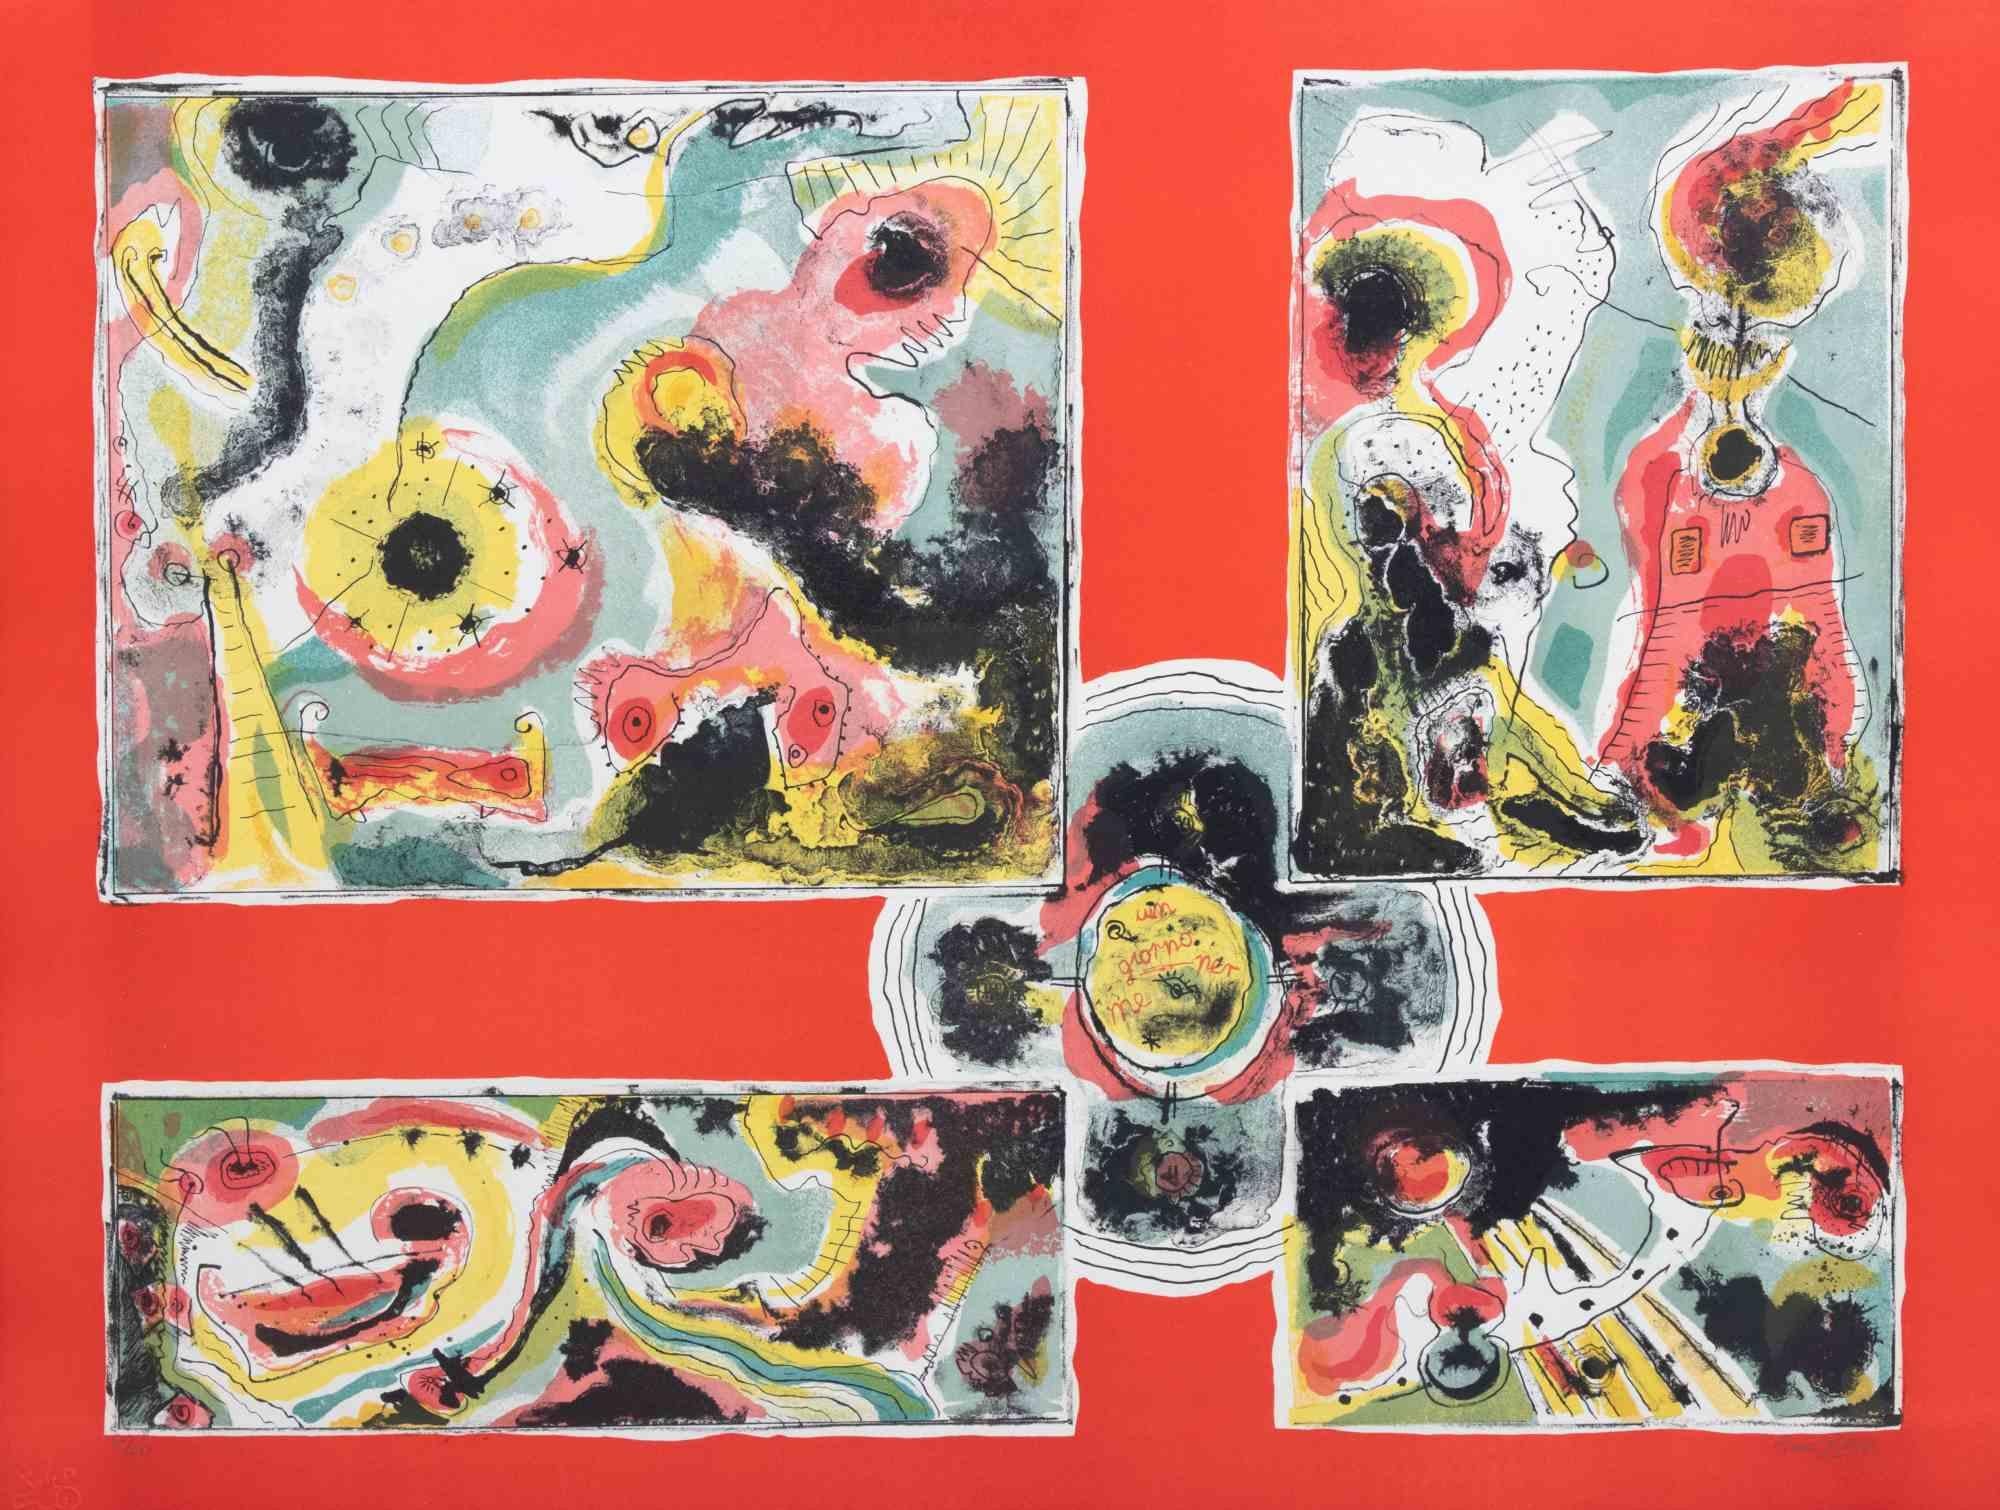 Red Abstract est une œuvre d'art contemporain réalisée par Le Pond dans les années 1970.

Lithographie en couleurs mélangées.

Signé à la main dans la marge inférieure.

Numéroté dans la marge inférieure.

Edition de 38/100